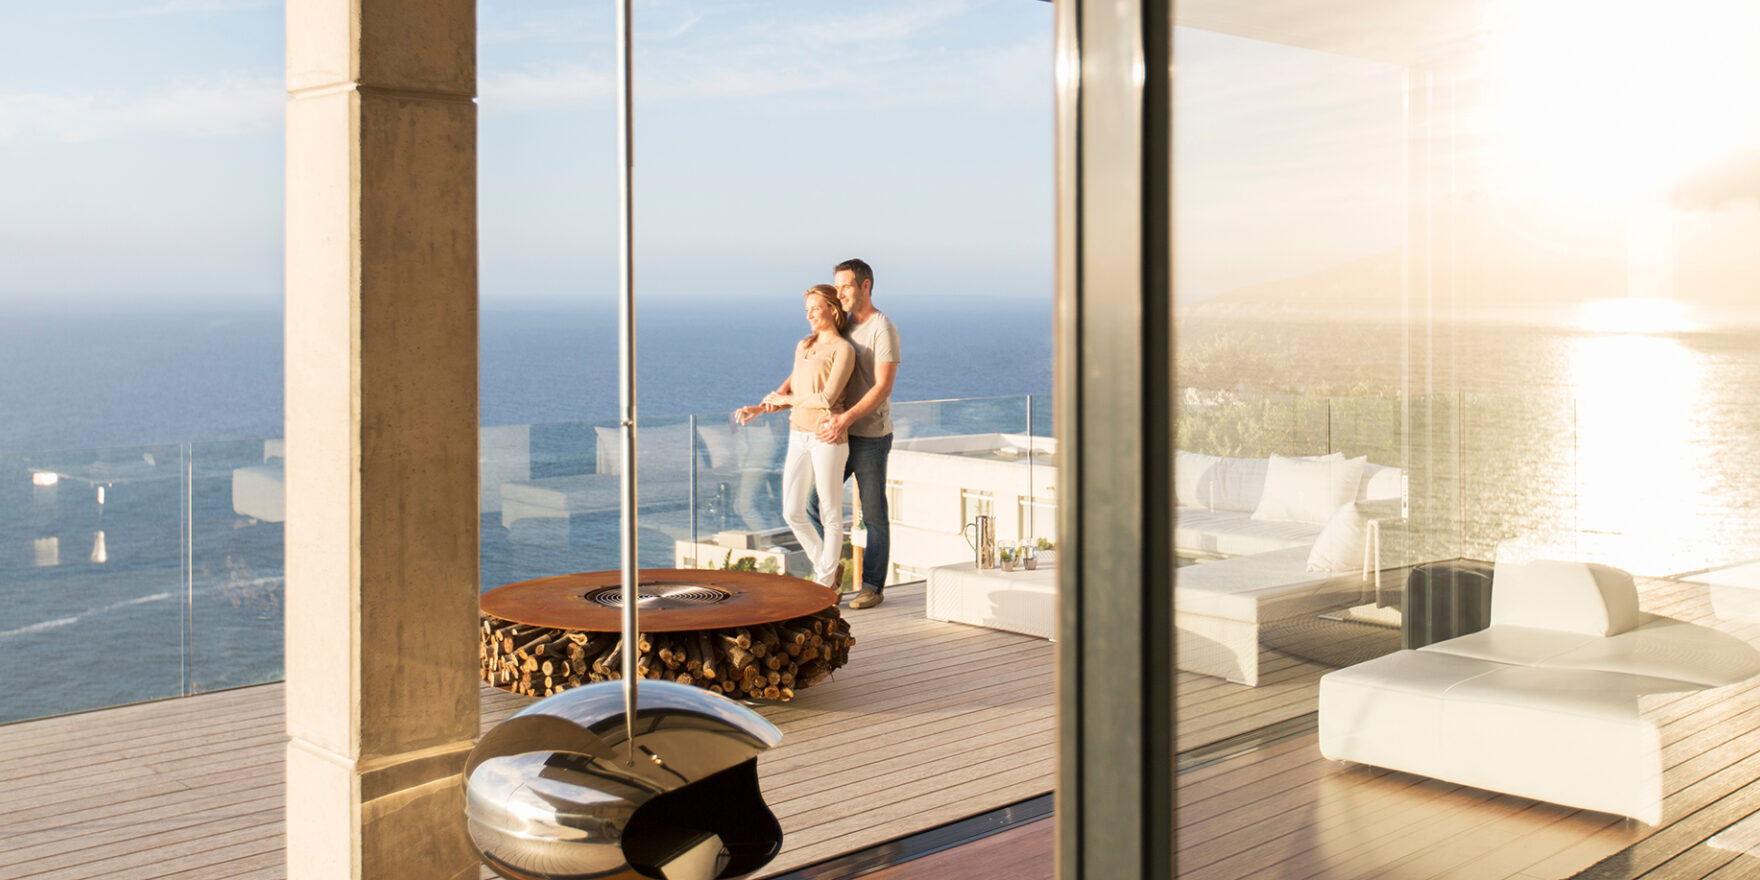 Couple on modern balcony overlooking ocean